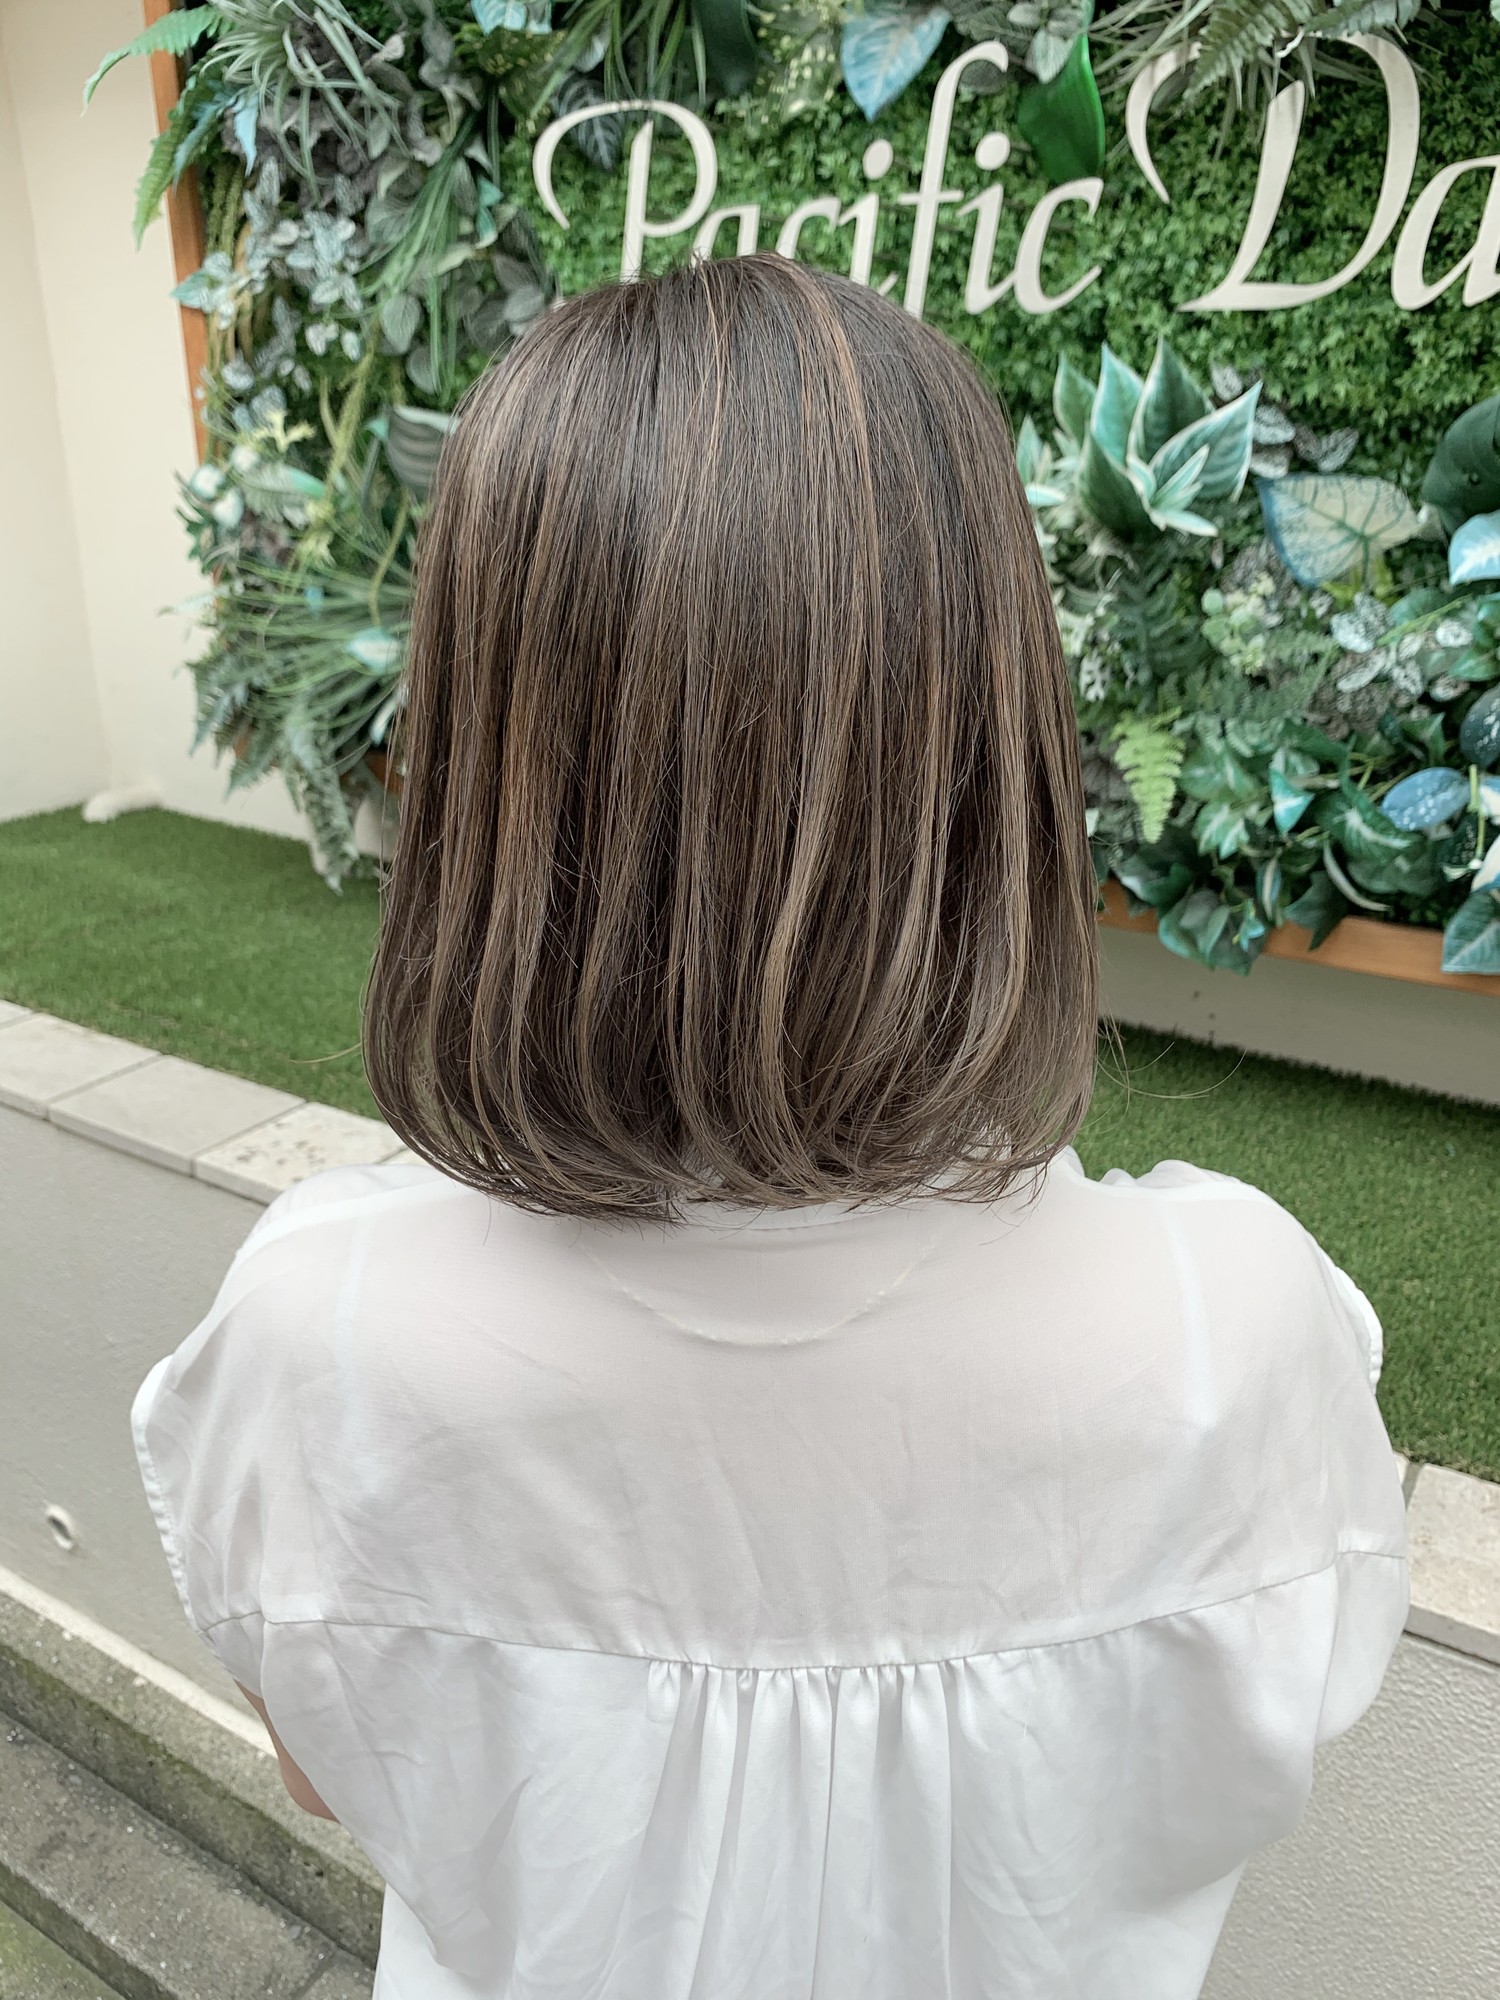 グラデーションカラー人気です 白髪があってもデザインできます 神戸で人気の美容院パシフィックダズール公式webサイト 西区 垂水区